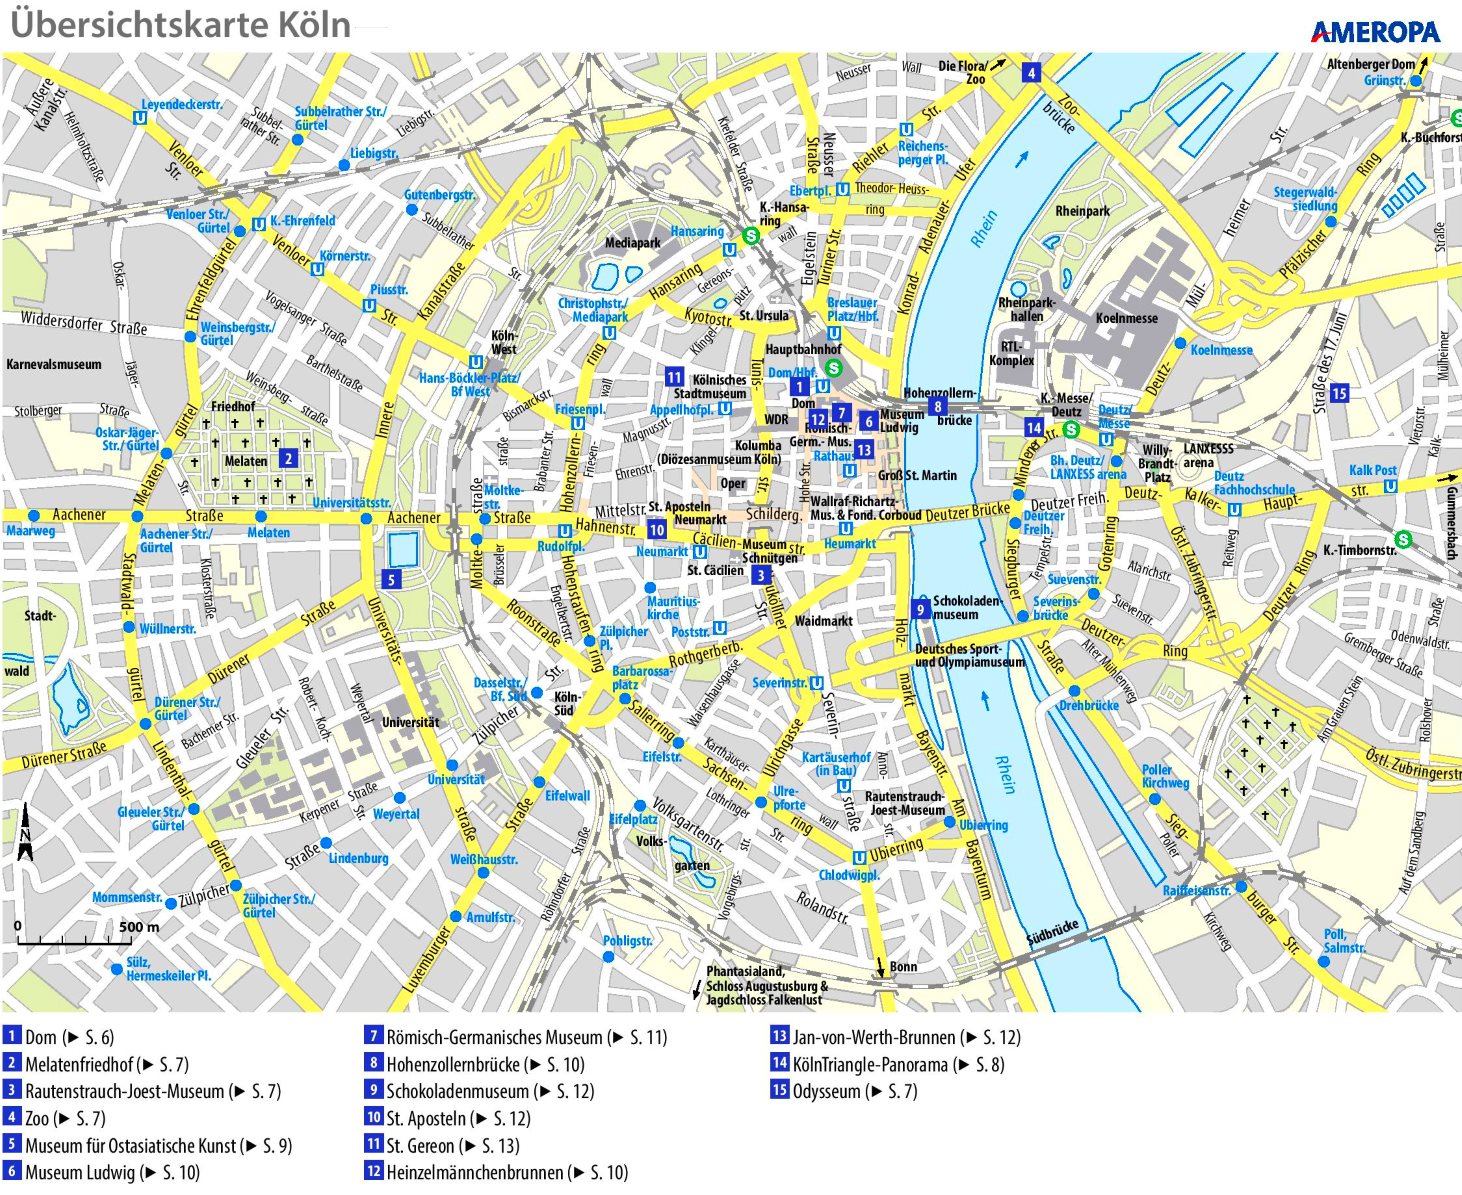 Touristischer stadtplan von Köln